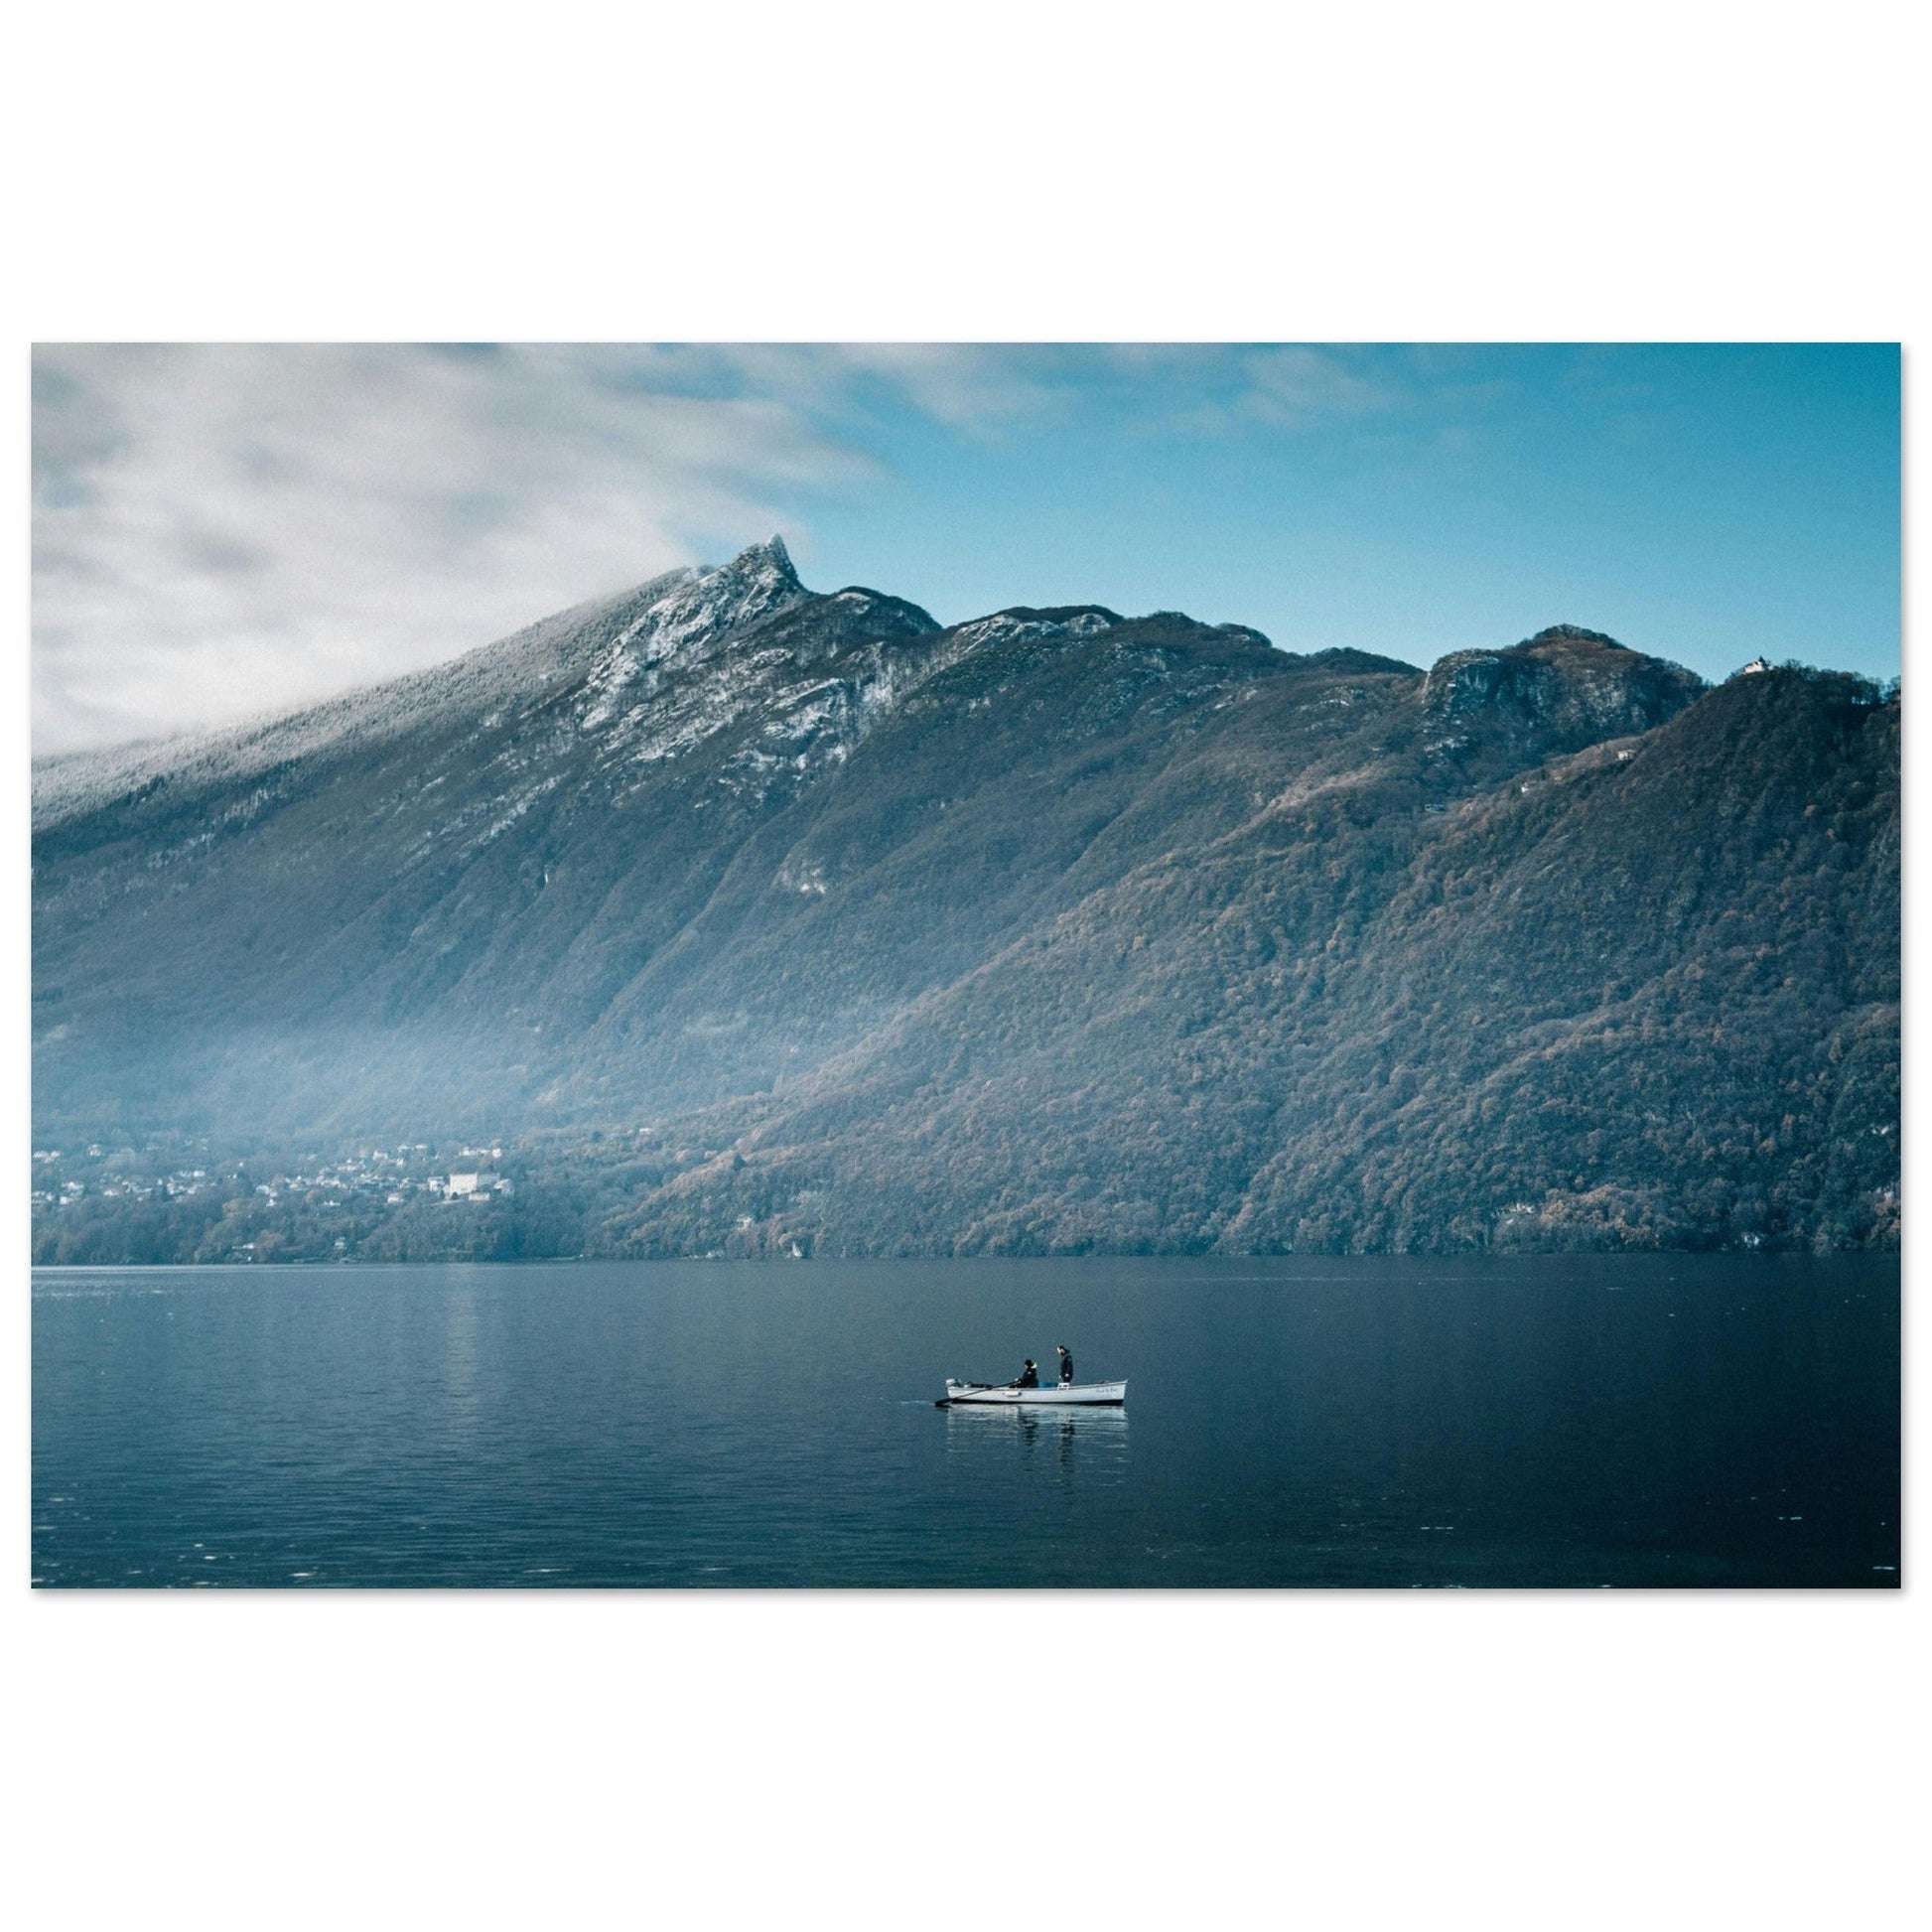 Vente Photo du lac du Bourget, Aix-les-Bains, Savoie #3 - Tableau photo alu montagne